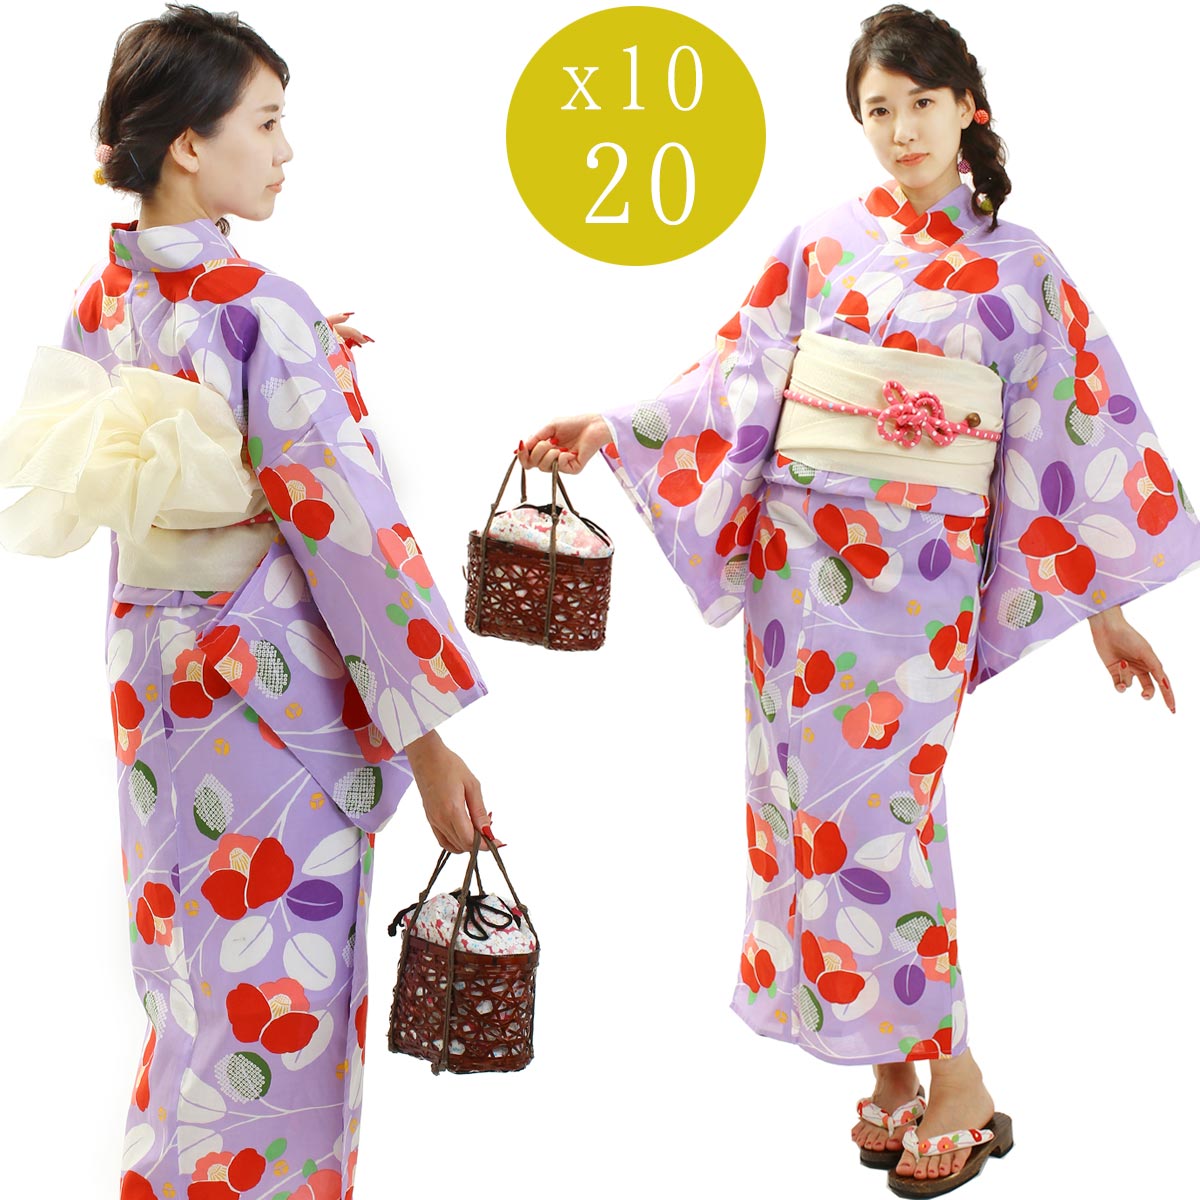 fuuka / Yukata obi set Fuuka kimono x10-20